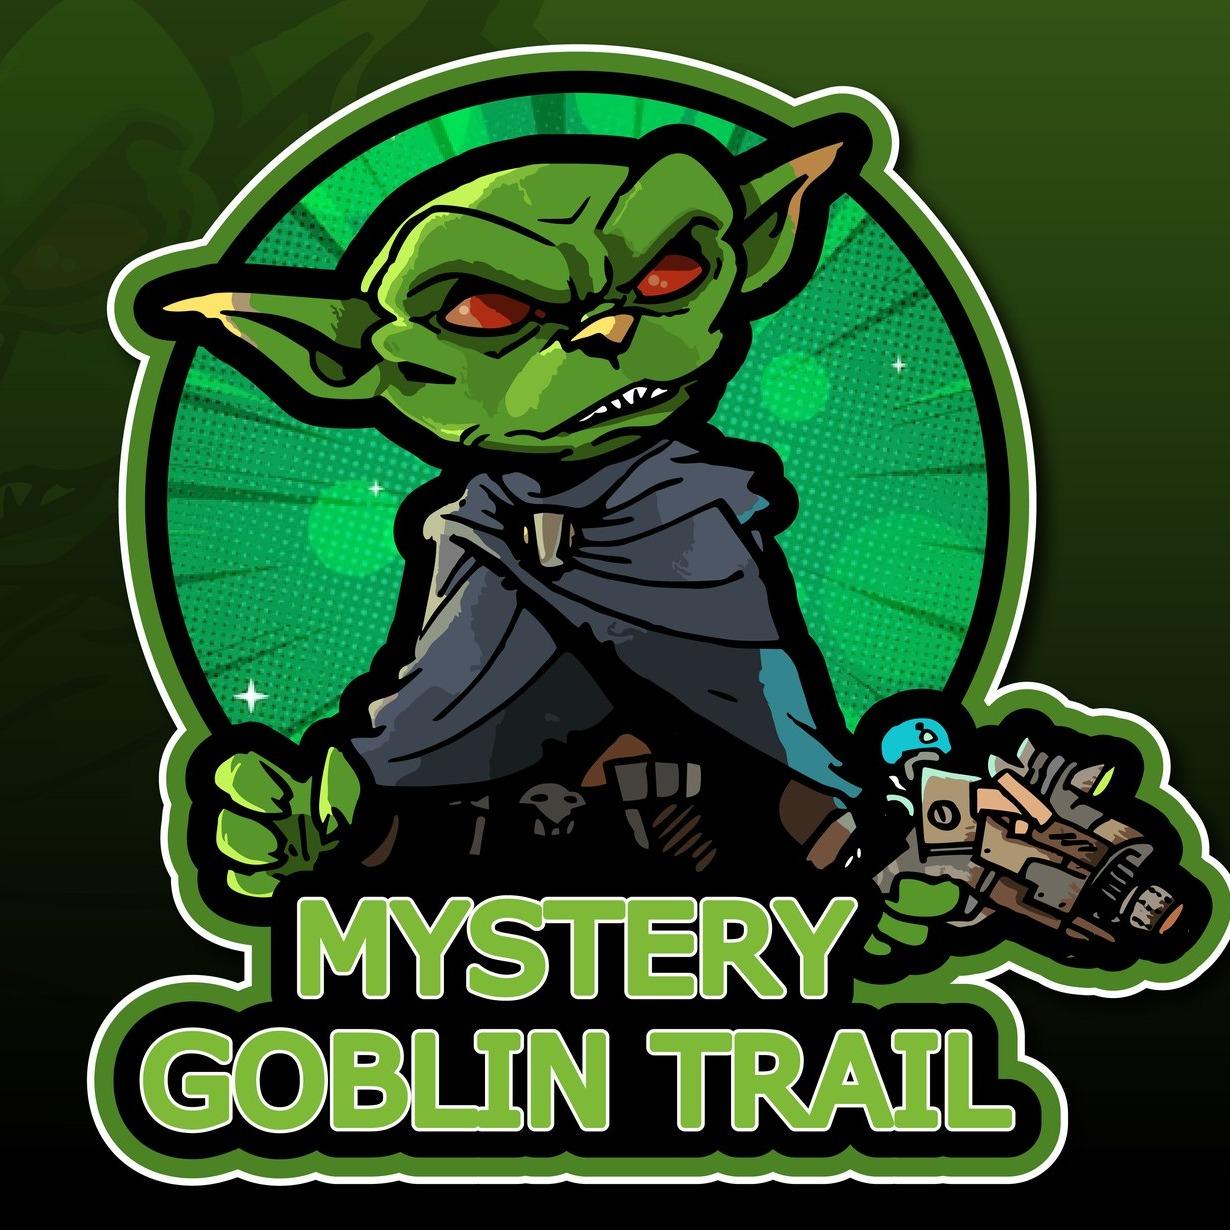 Mystery goblin trail - Oldsmar, FL 34677 - (337)409-9124 | ShowMeLocal.com